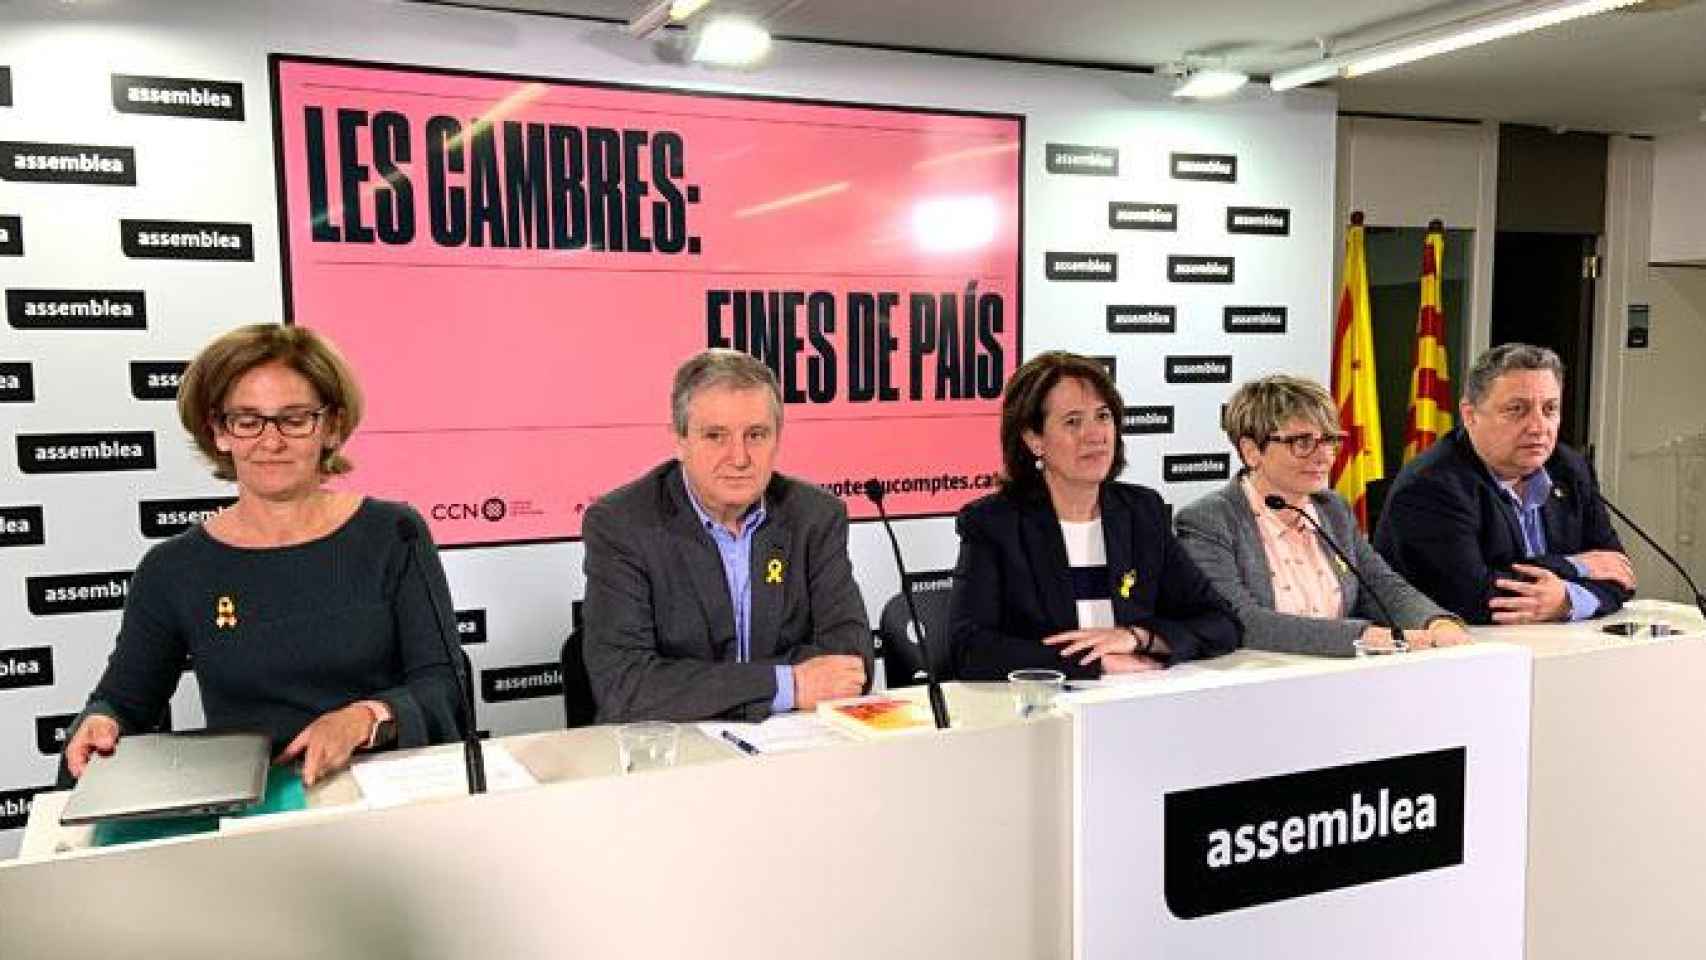 La presidenta de la ANC, Elisenda Paluzie (c), junto a los representantes de Eines de País. Roser Xalabarder (i), Jesús Serra (2i), María Català (2d) y Jordi Roset (d) / CG